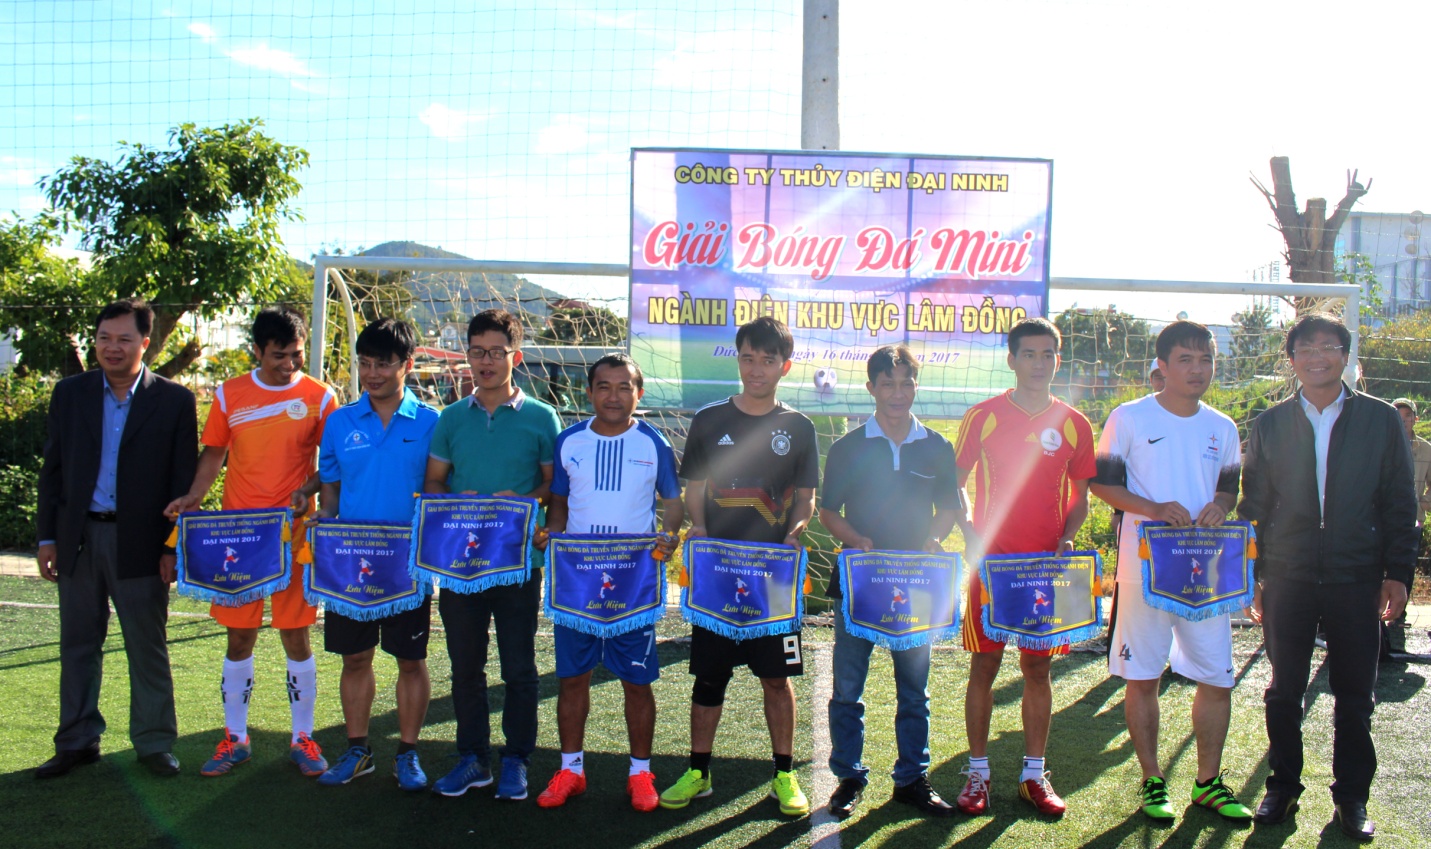 Thủy điện Đại Ninh- Tổ chức giải bóng đá mini truyền thống ngành điện khu vực Lâm Đồng năm 2017